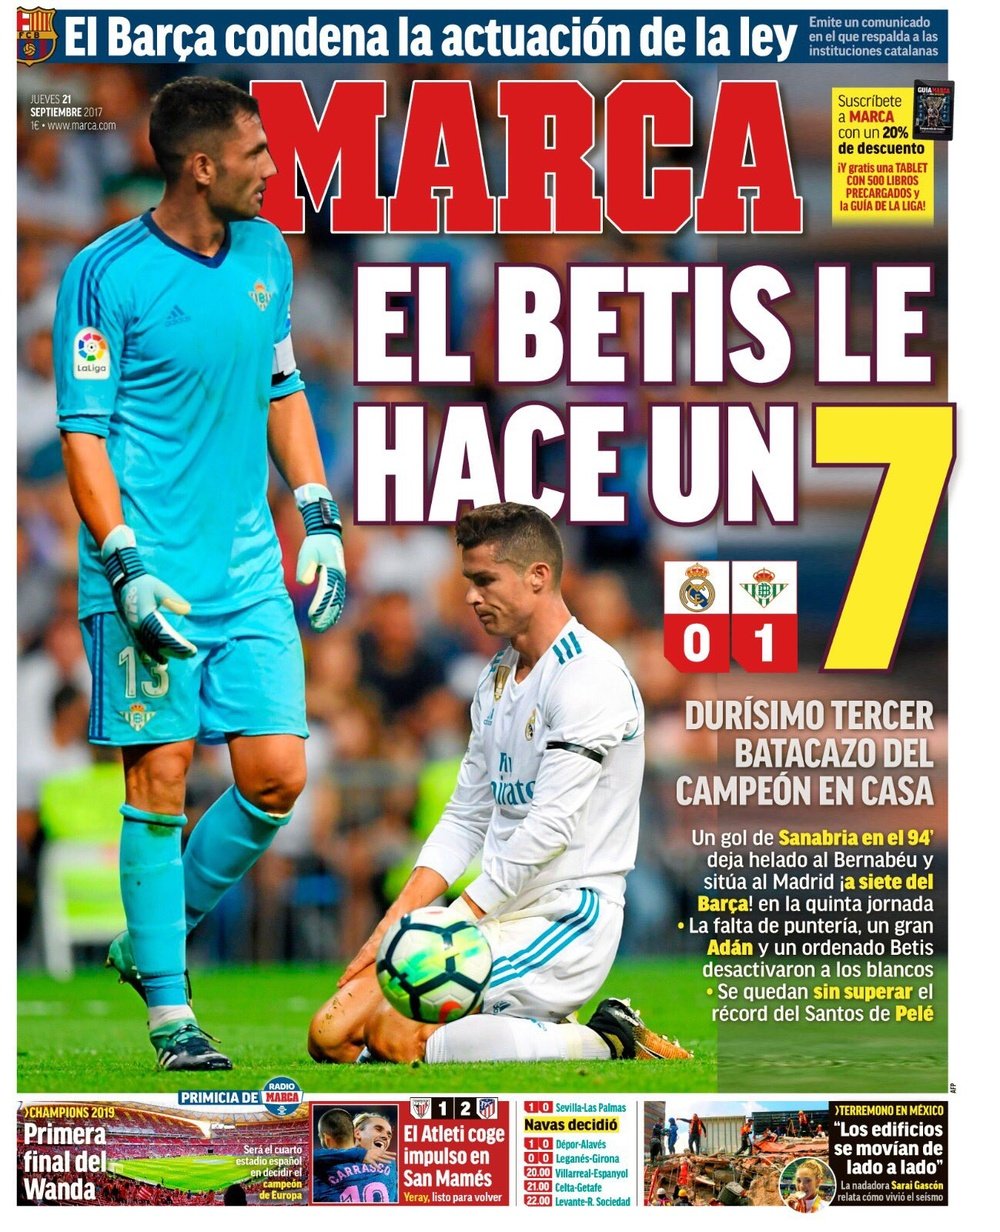 La Une du quotidien sportif espagnol 'Marca' du 21-09-17. Marca